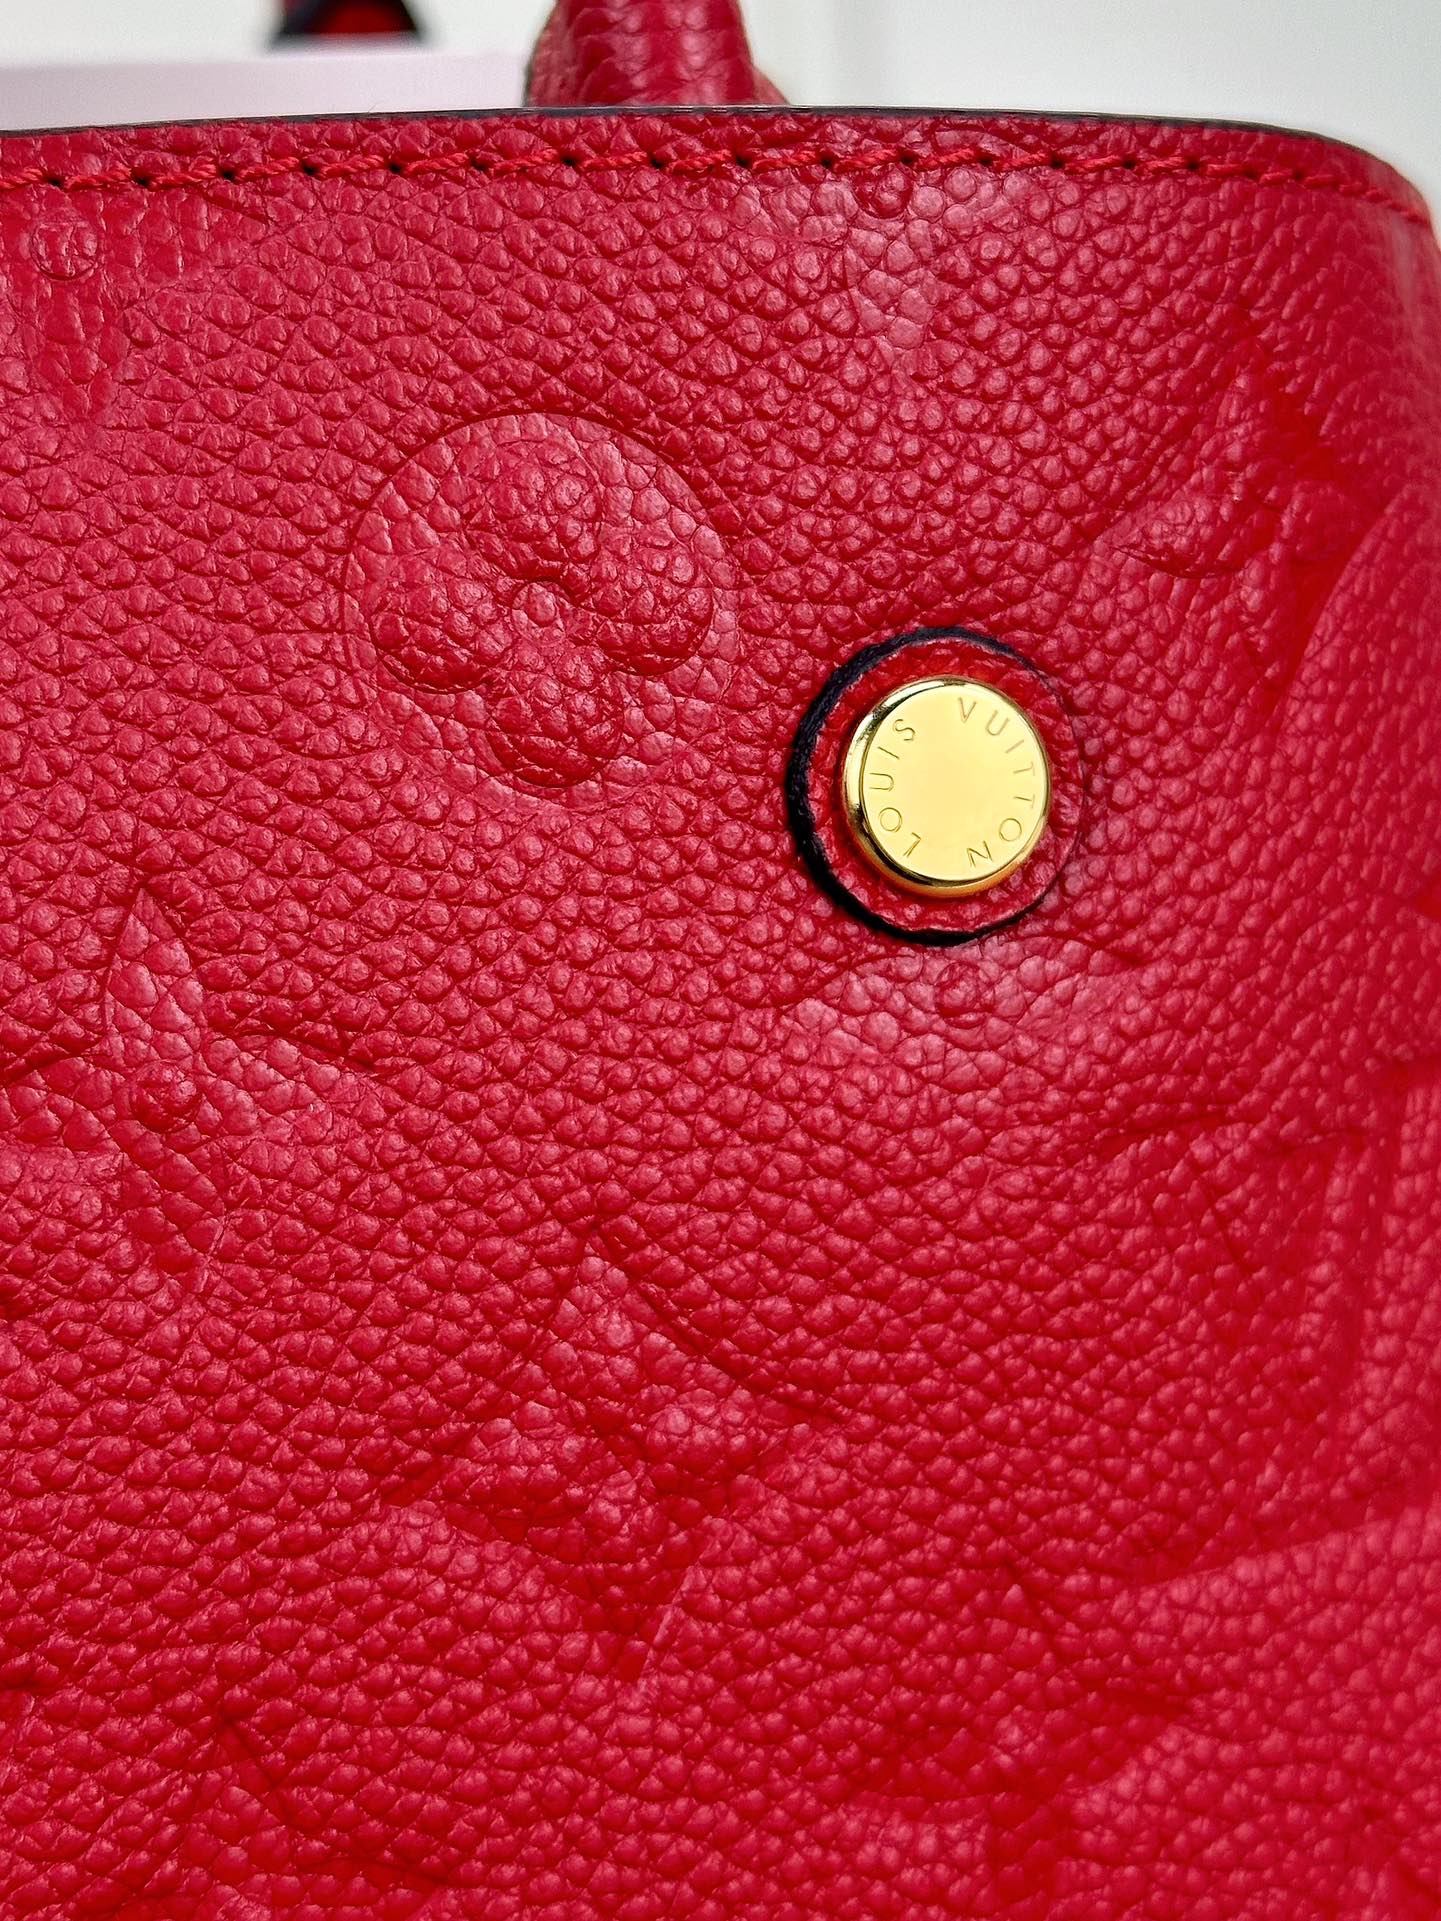 顶级原单M41053红色小巧精致的迷你款Montaigne手袋拥有多种携带方式是商务女士的理想便携包款其